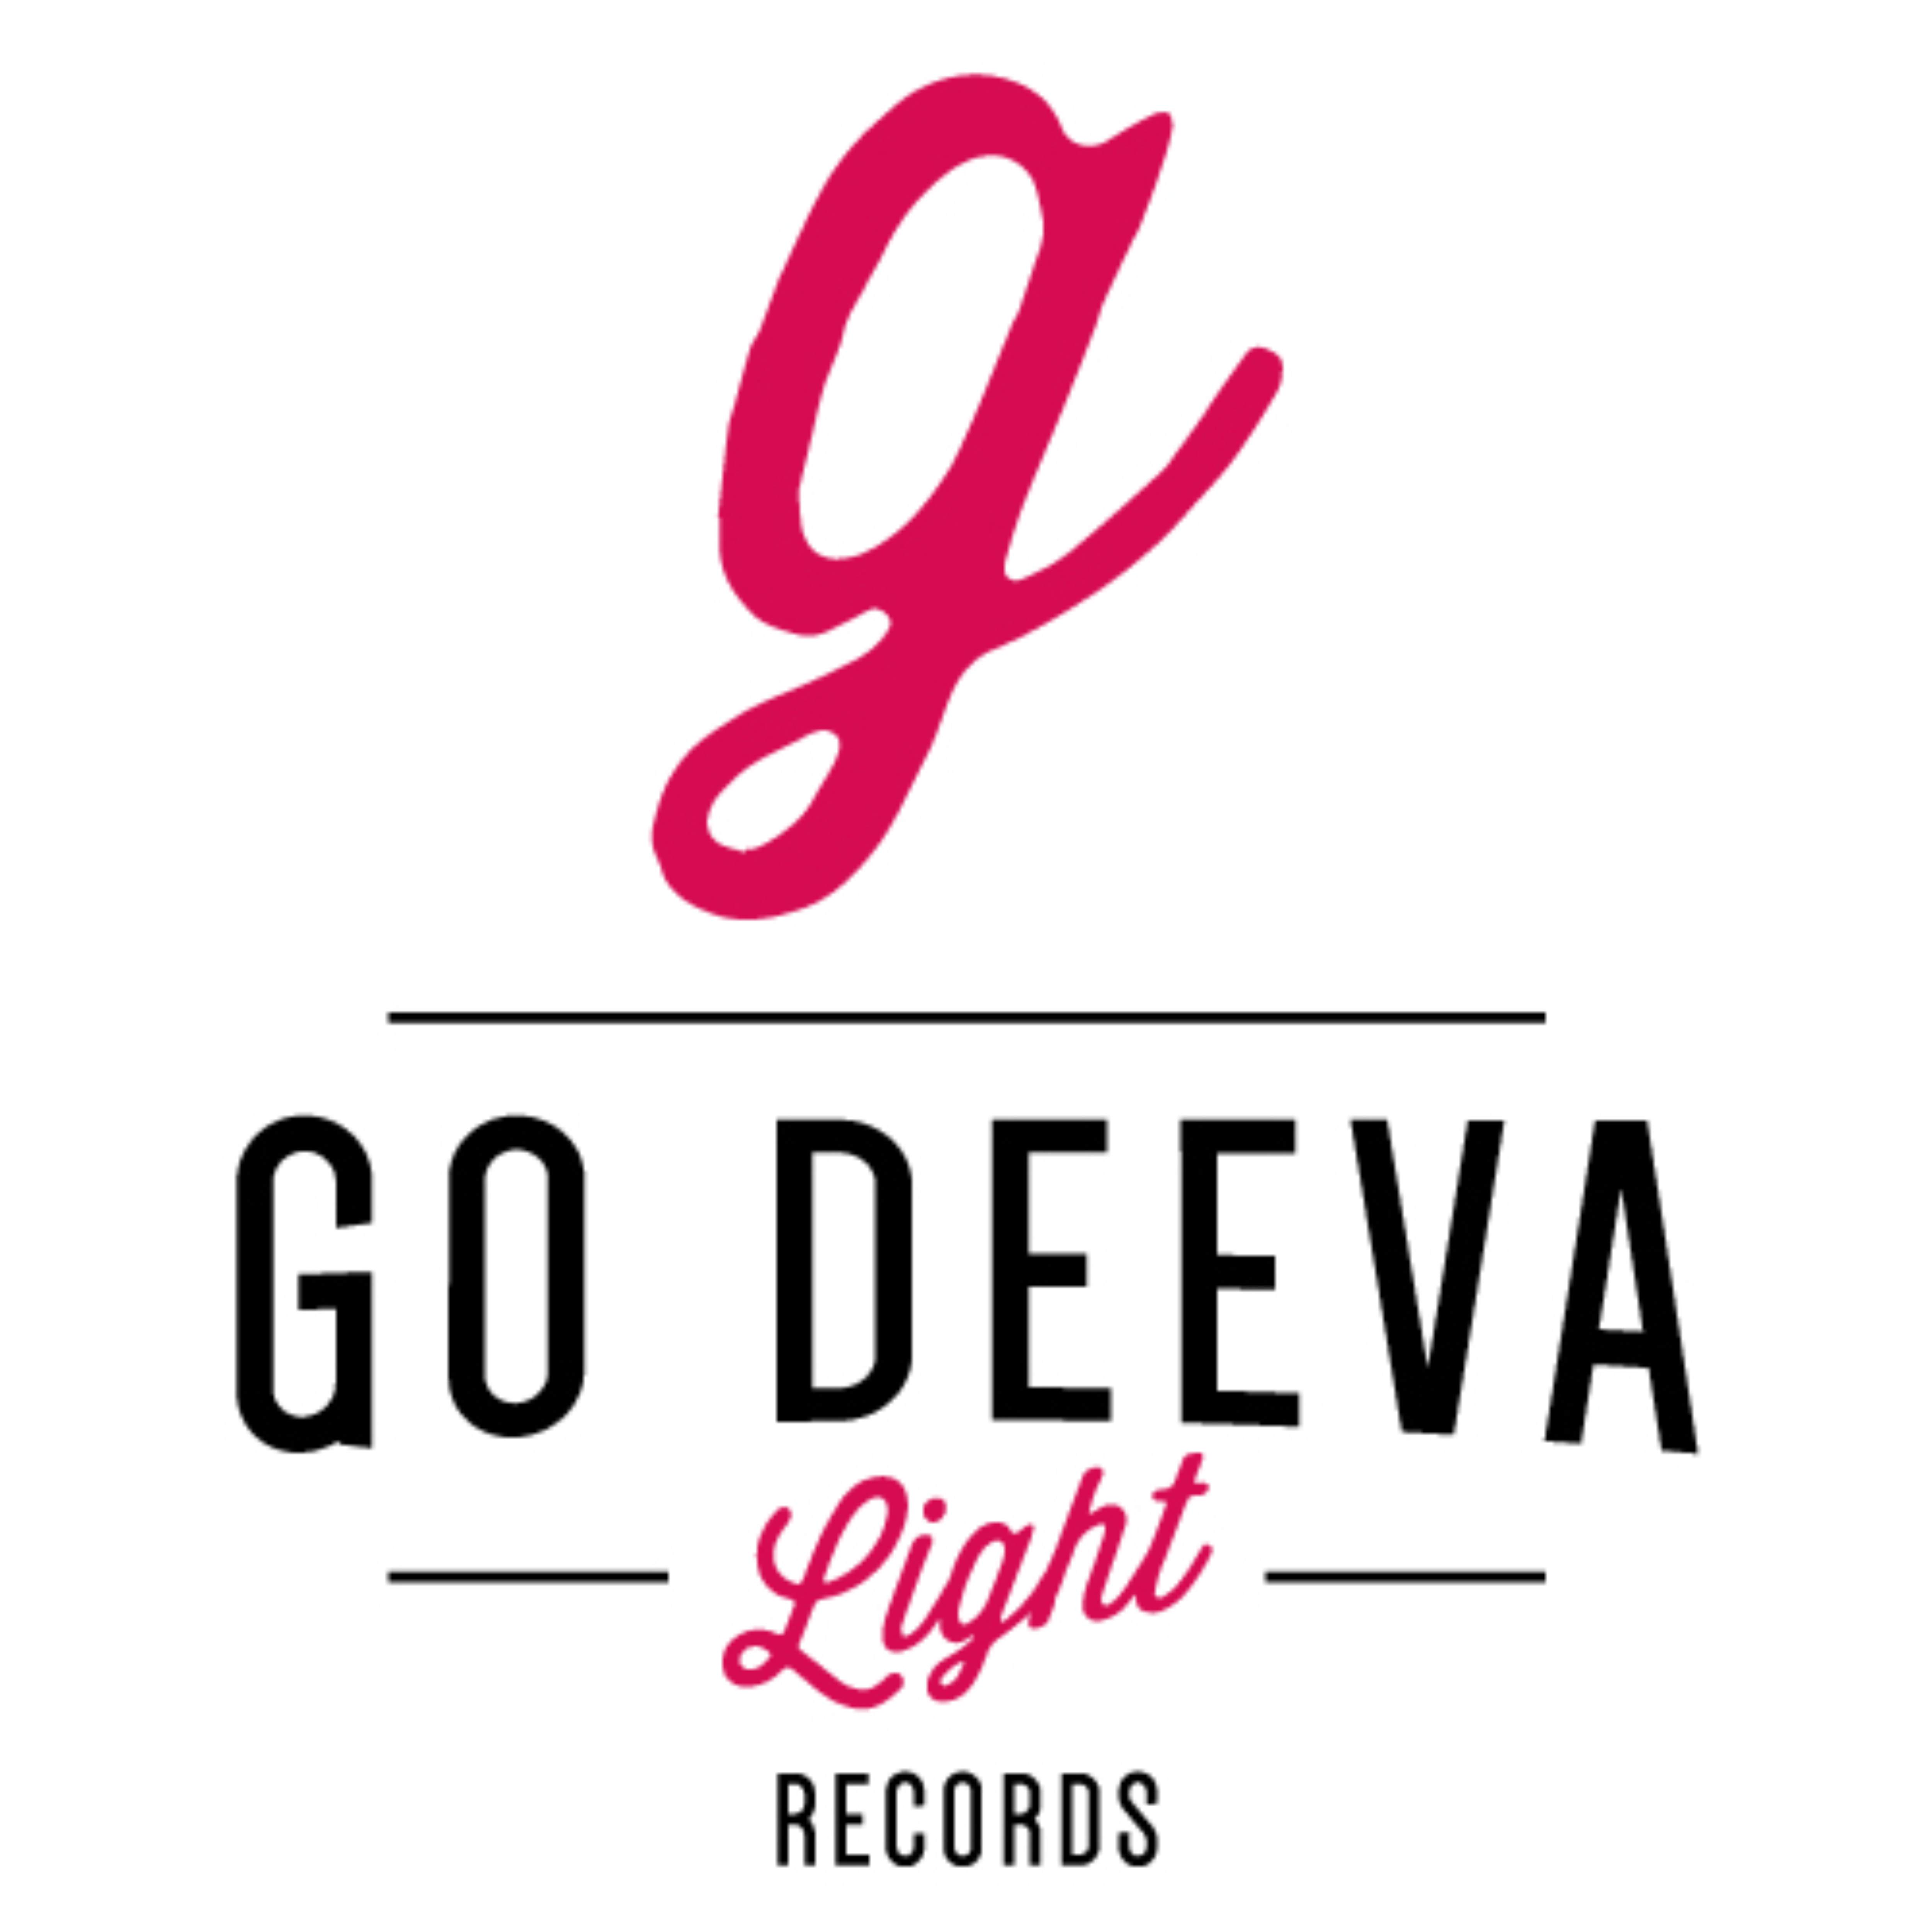 Go Deeva Light Records